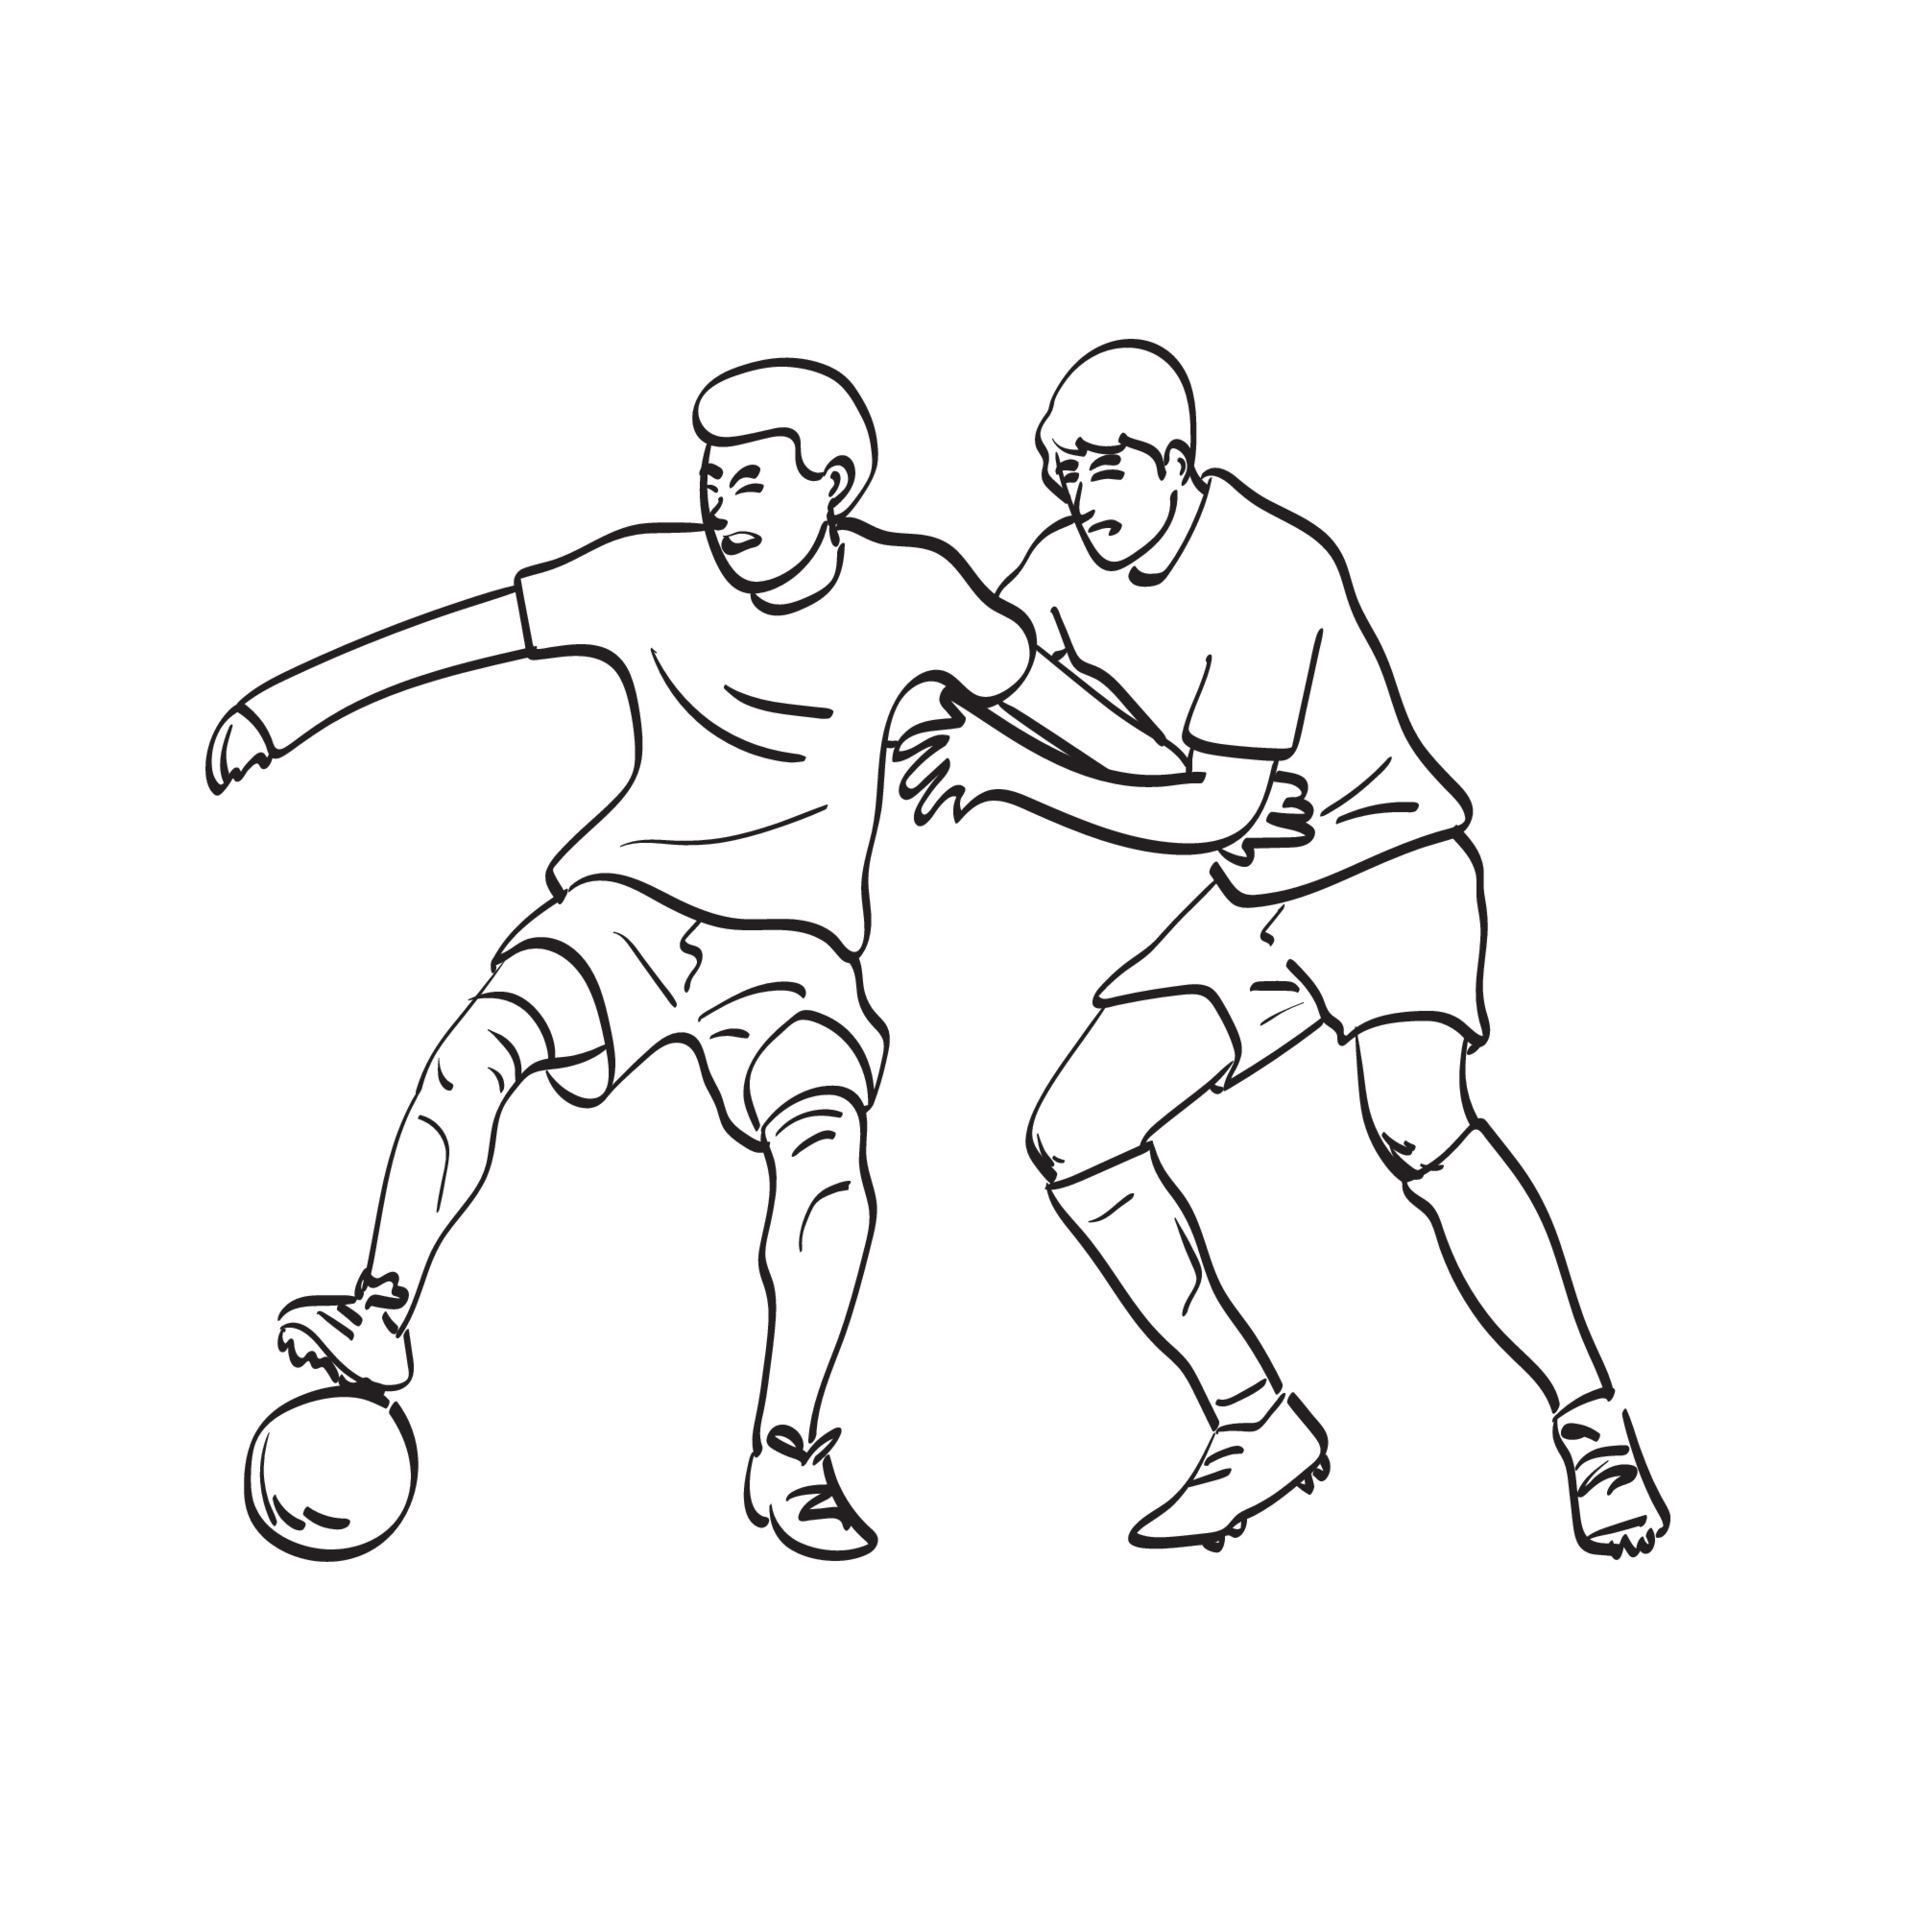 Desenho de linha única de dois jogadores de futebol lutando pela bola no  jogo esporte de partida de futebol